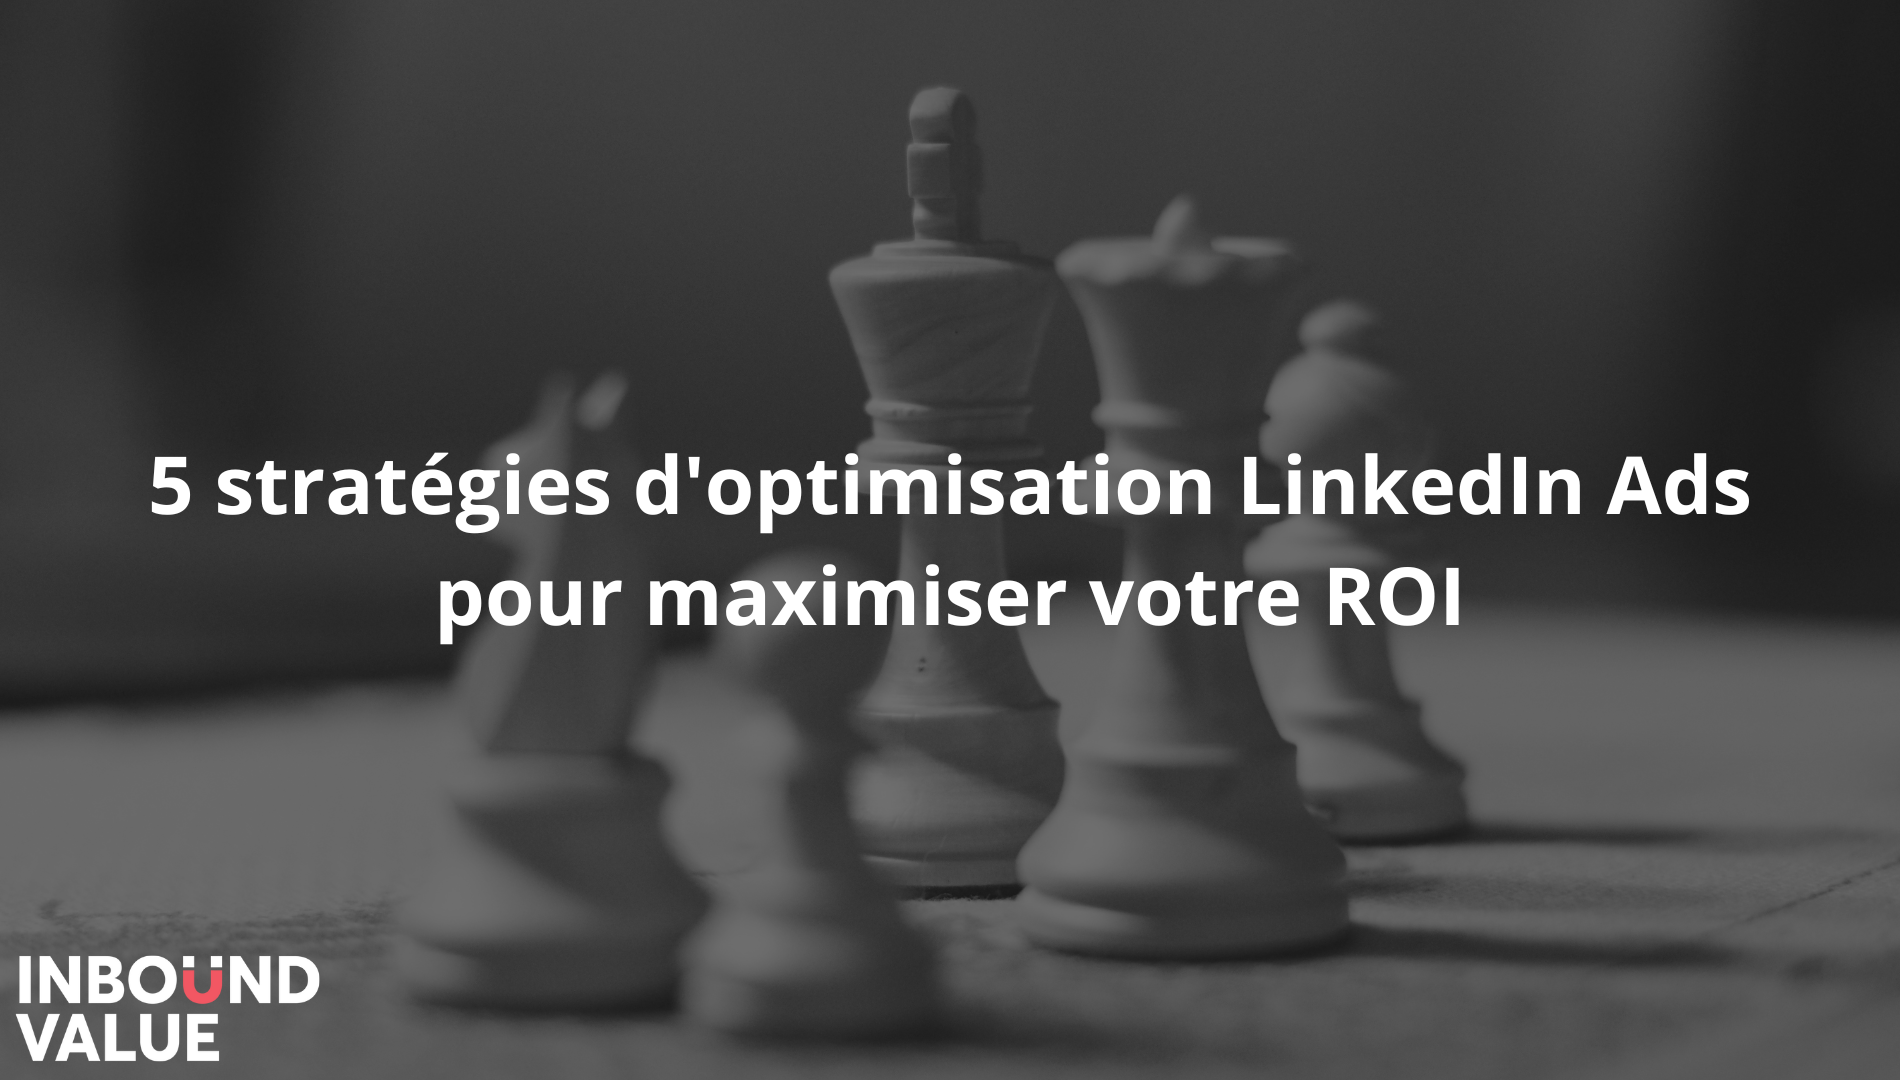 illustration pour le titre “5 stratégies d'optimisation LinkedIn Ads pour maximiser votre ROI” - titre avec image de fond représnetant des pions + logo d’inbound value.